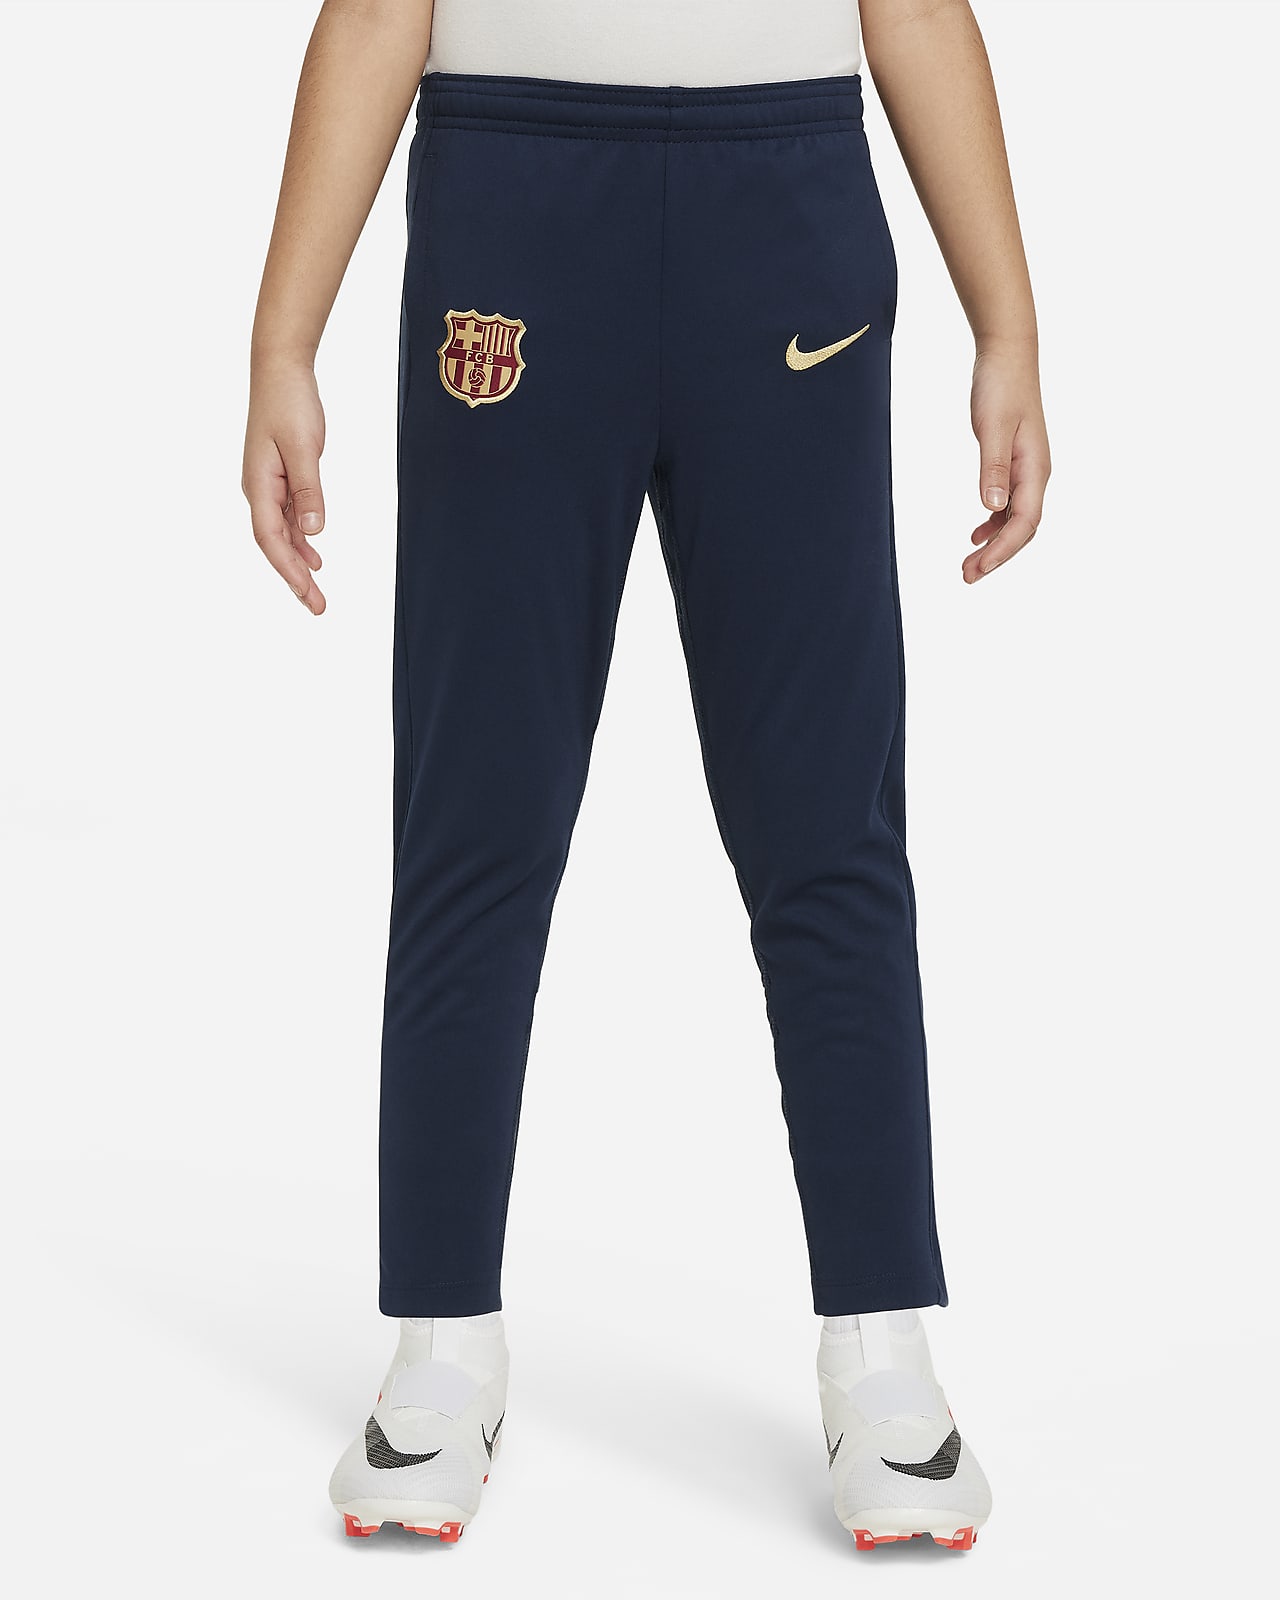 Academy Pro FC Barcelona Pantalón de fútbol de tejido Knit Nike - Niño/a pequeño/a